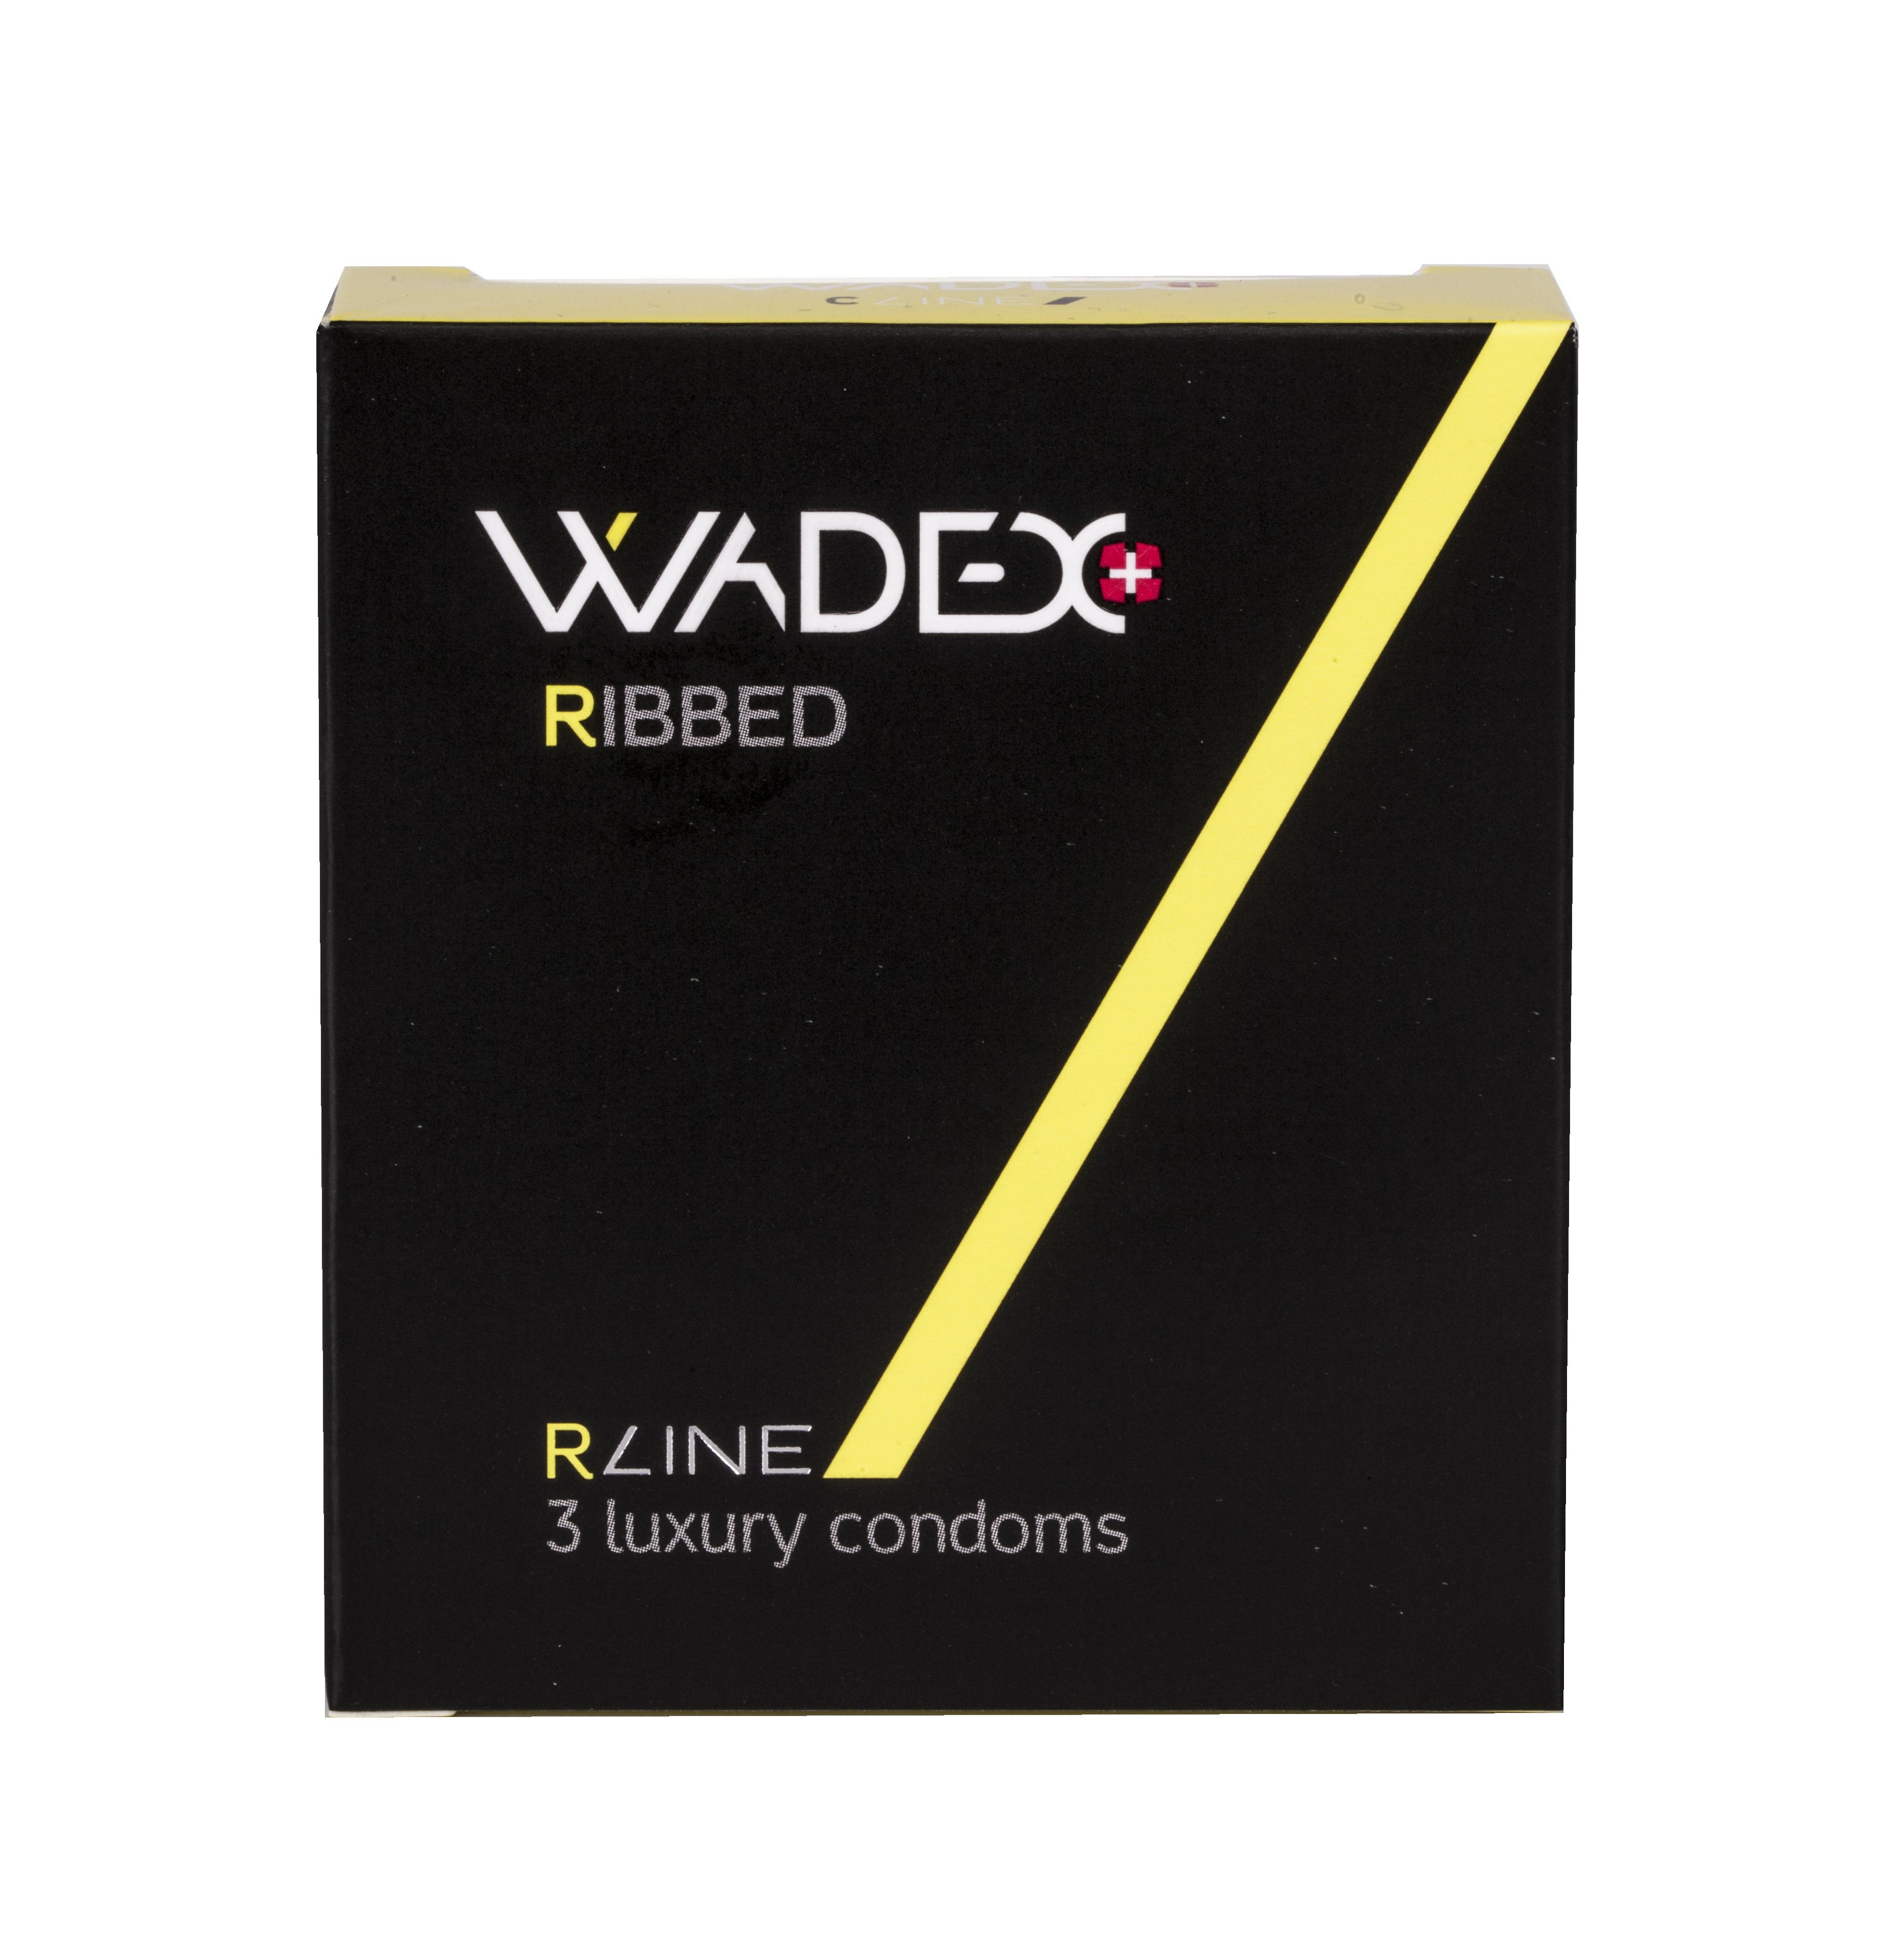 WADEX Ribbed kondomy 3 ks WADEX